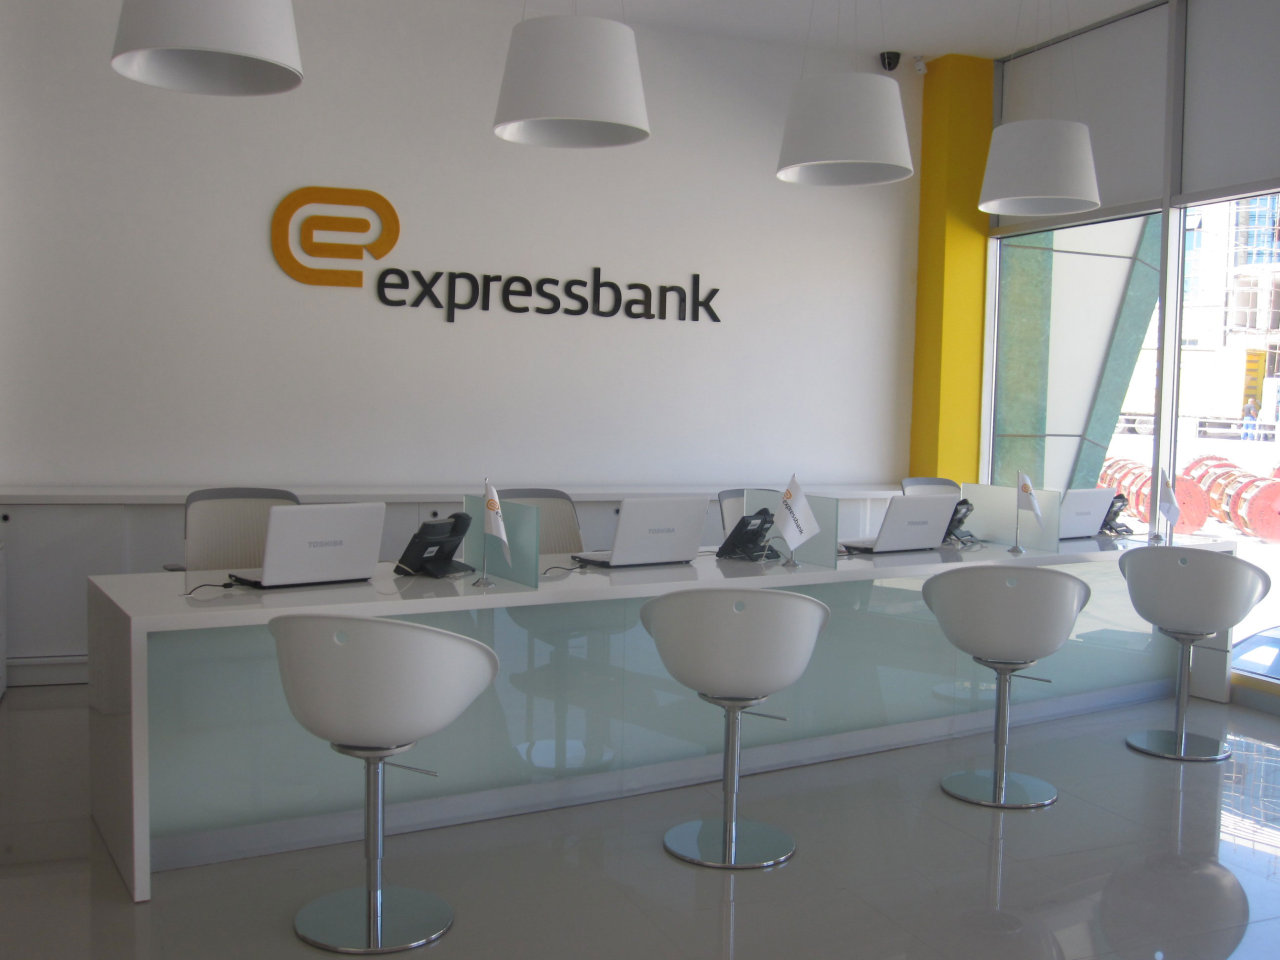 Azərbaycan bankı “Expressbank” filial şəbəkəsini genişləndirir